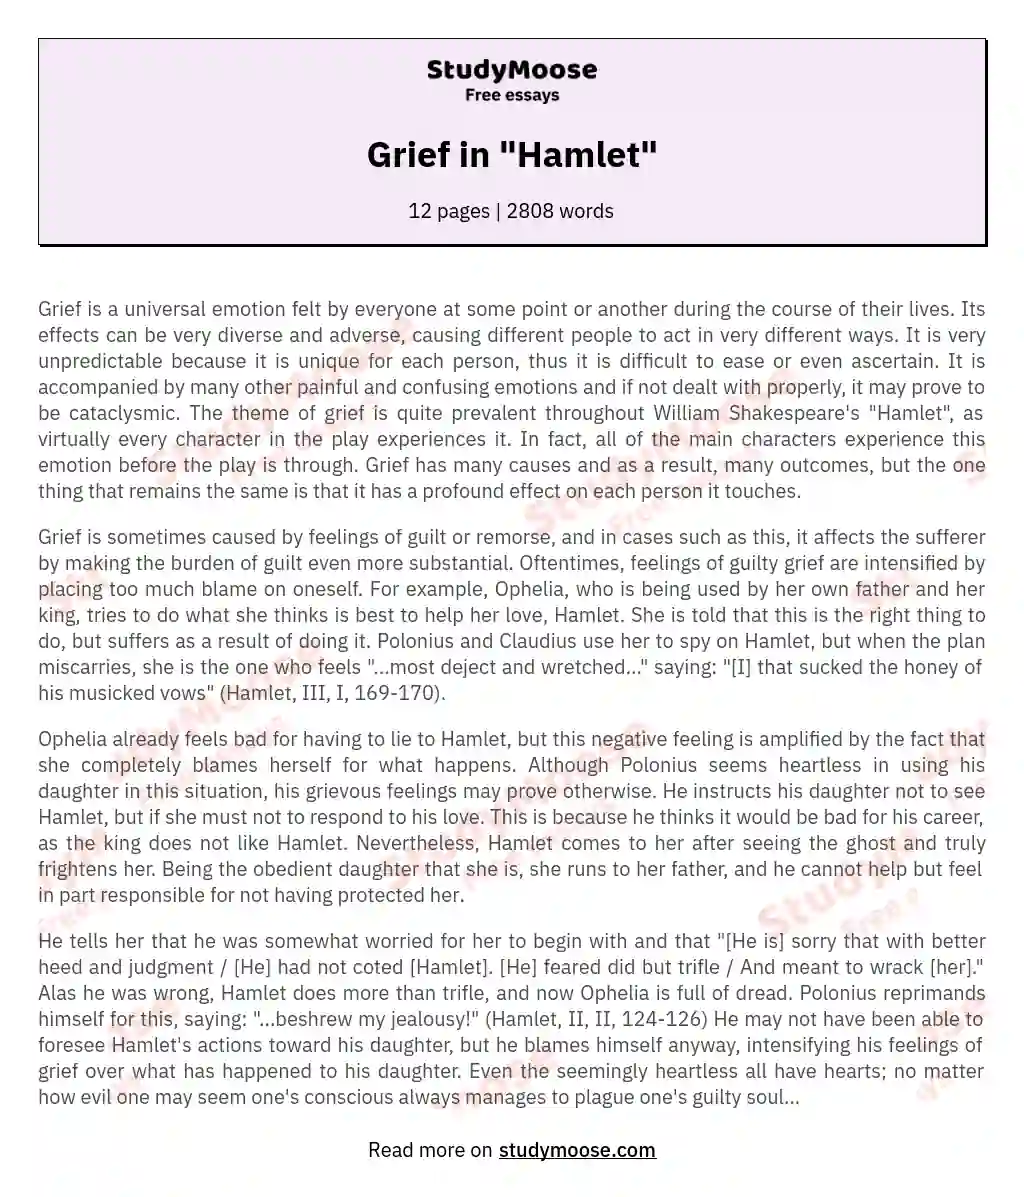 Grief in "Hamlet" essay